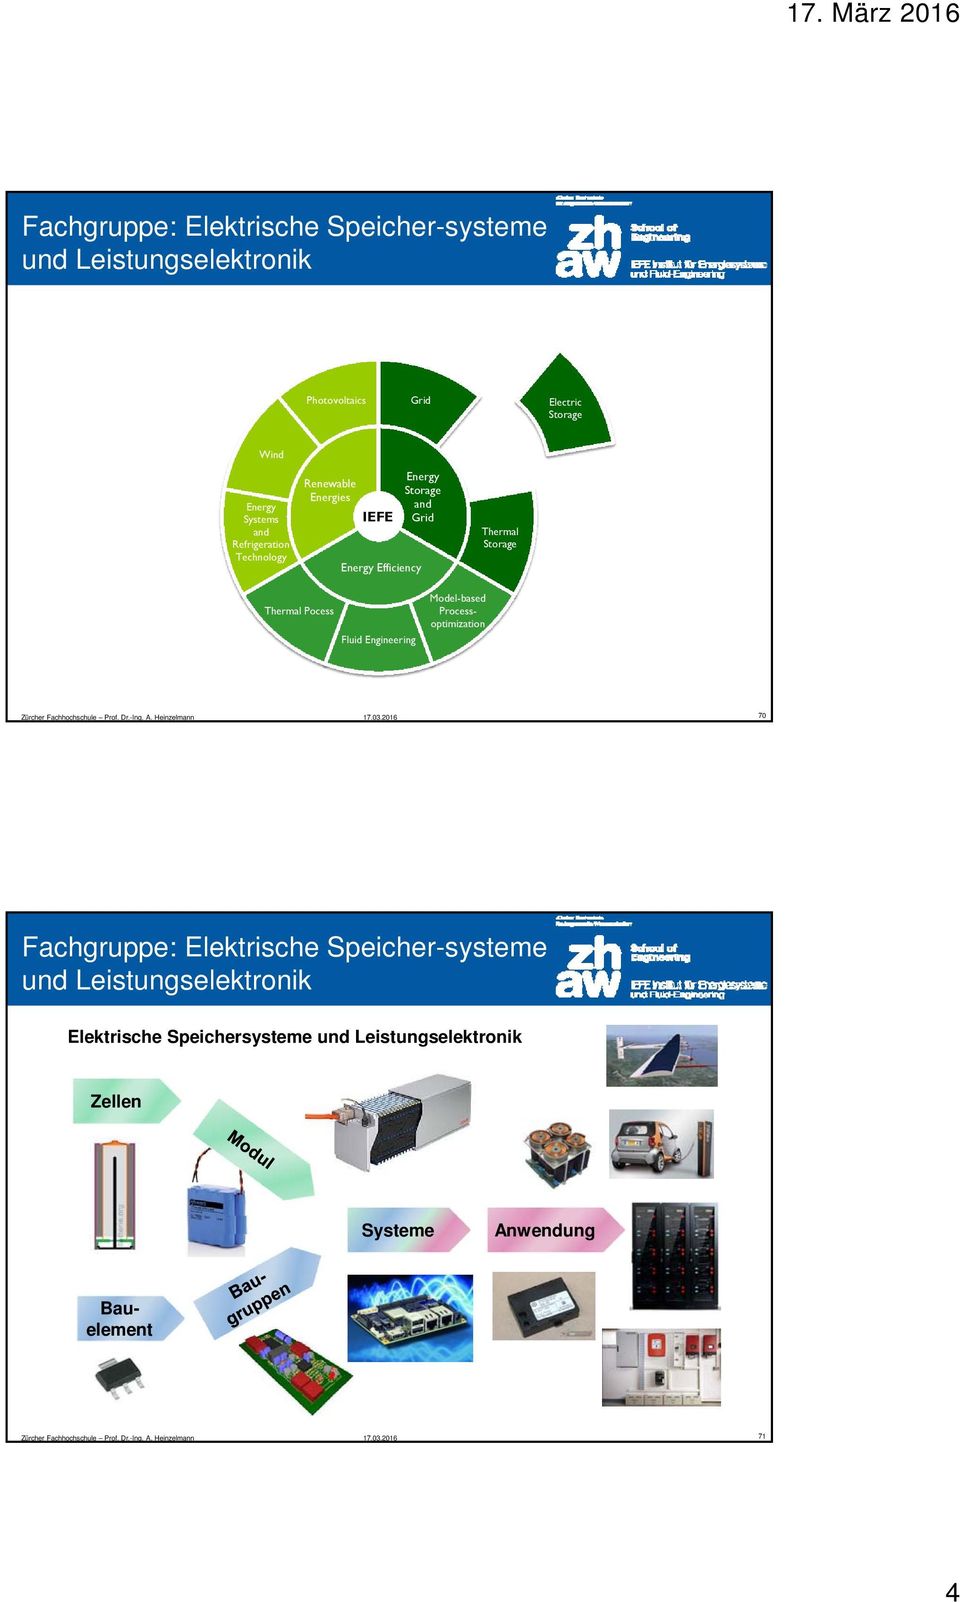 Storage Thermal Storage Thermal Pocess Fluid Engineering 70 Fachgruppe: Elektrische Speicher-systeme und